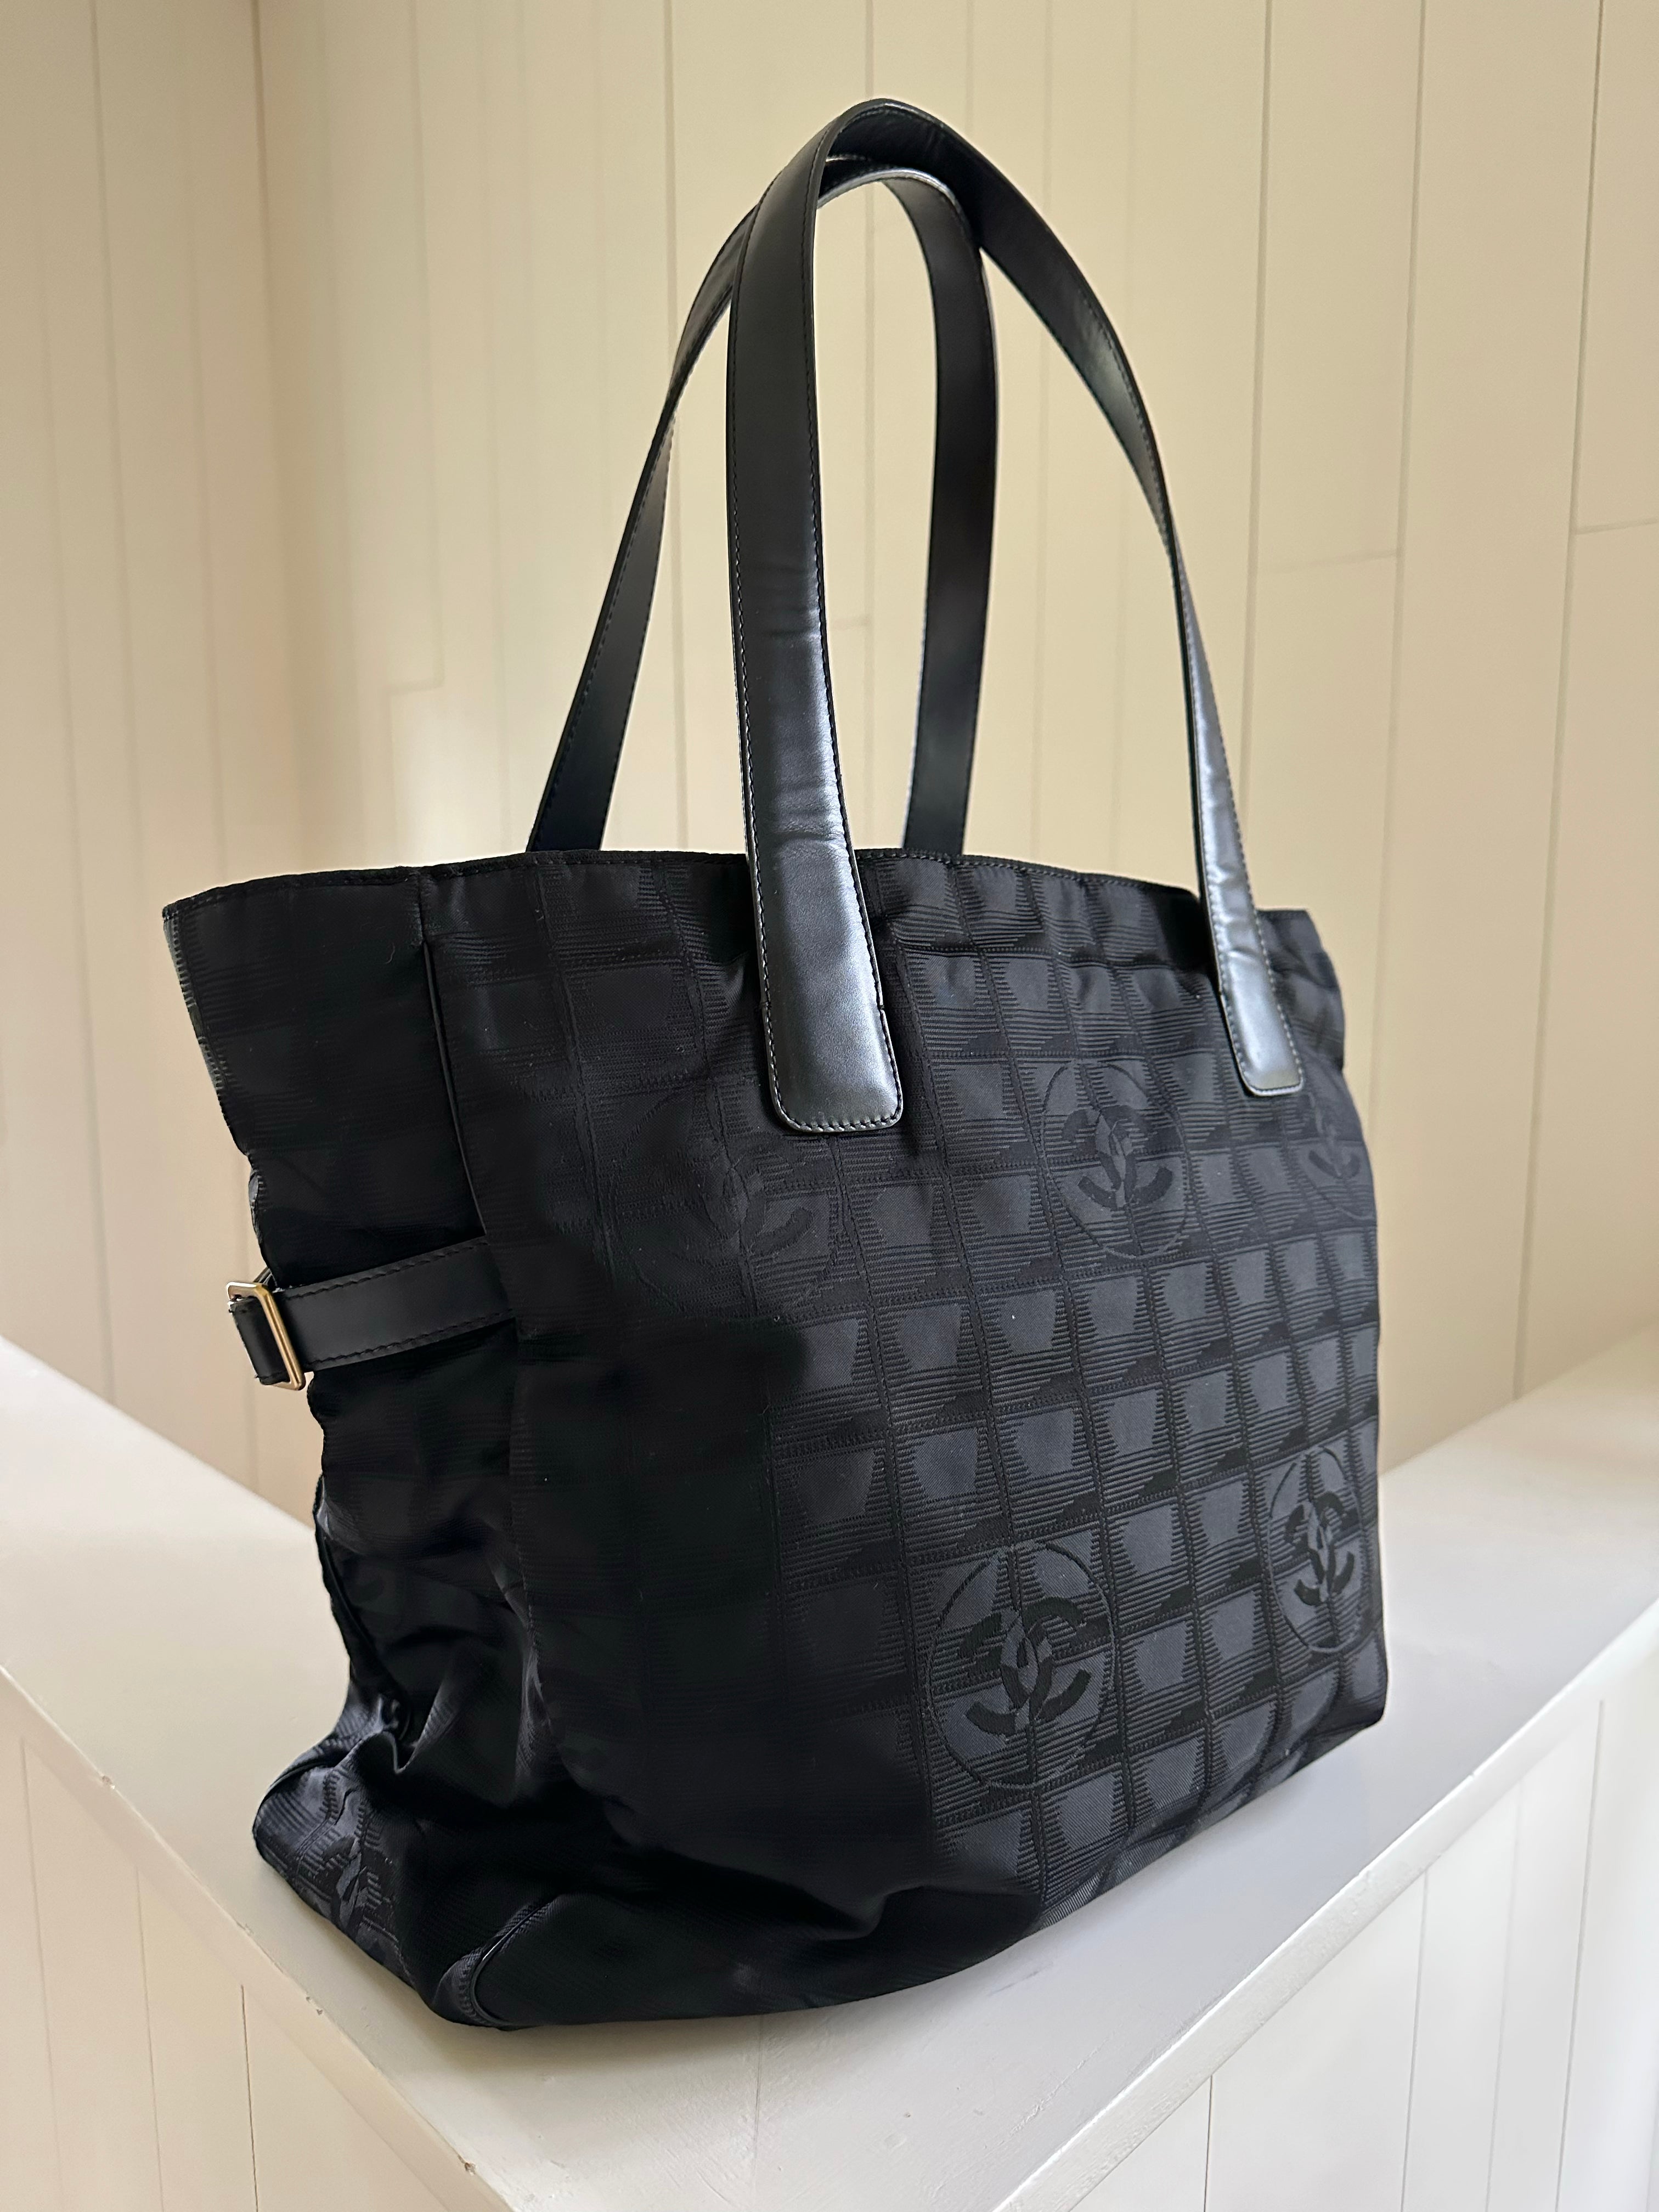 Chanel Travel Ligne Tote – Handbag Social Club